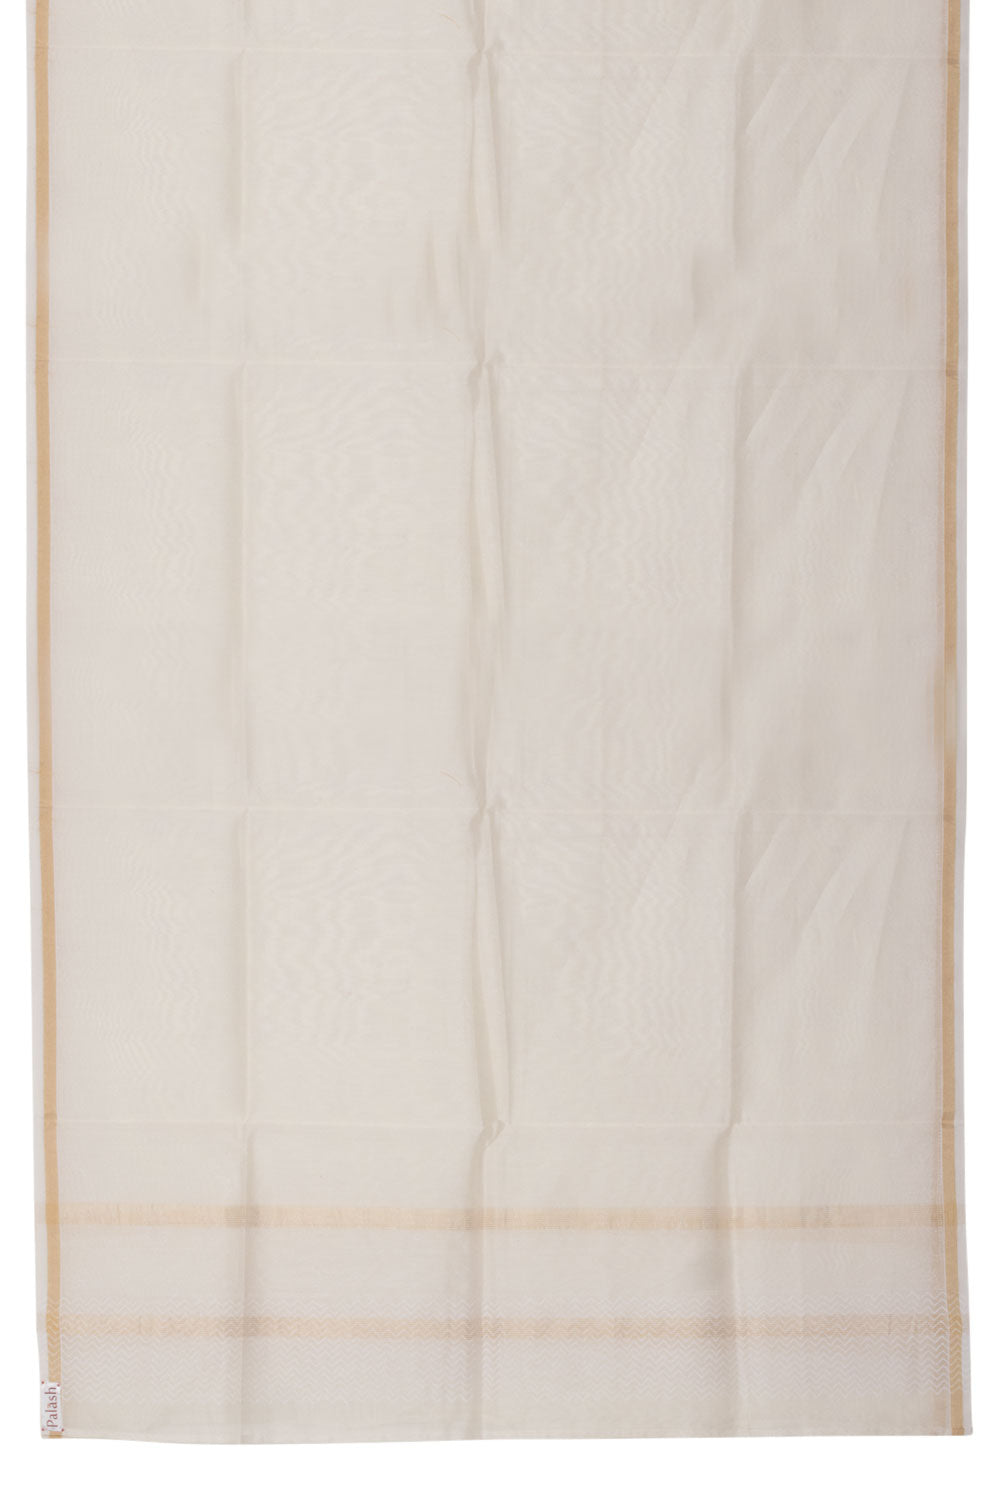 Off White Handwoven Chanderi Silk Cotton Dupatta 10061088